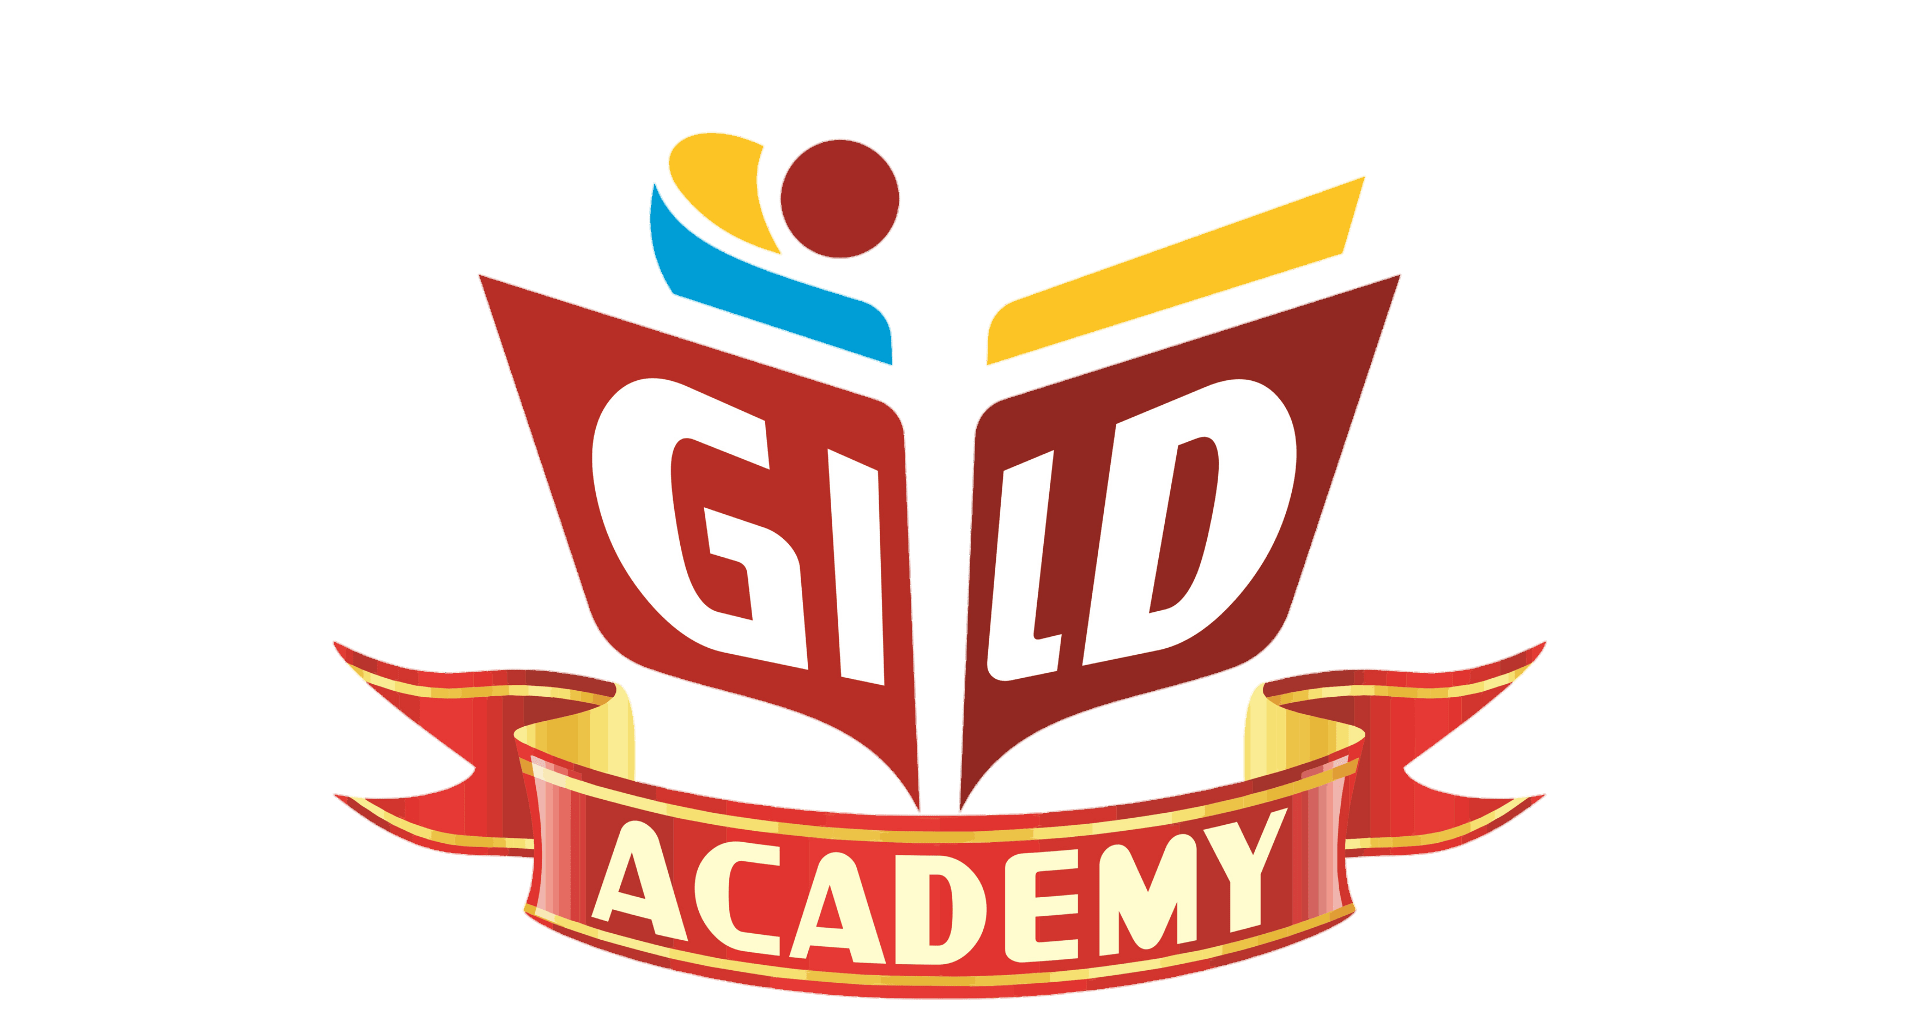 GILD ACADEMY|Schools|Education